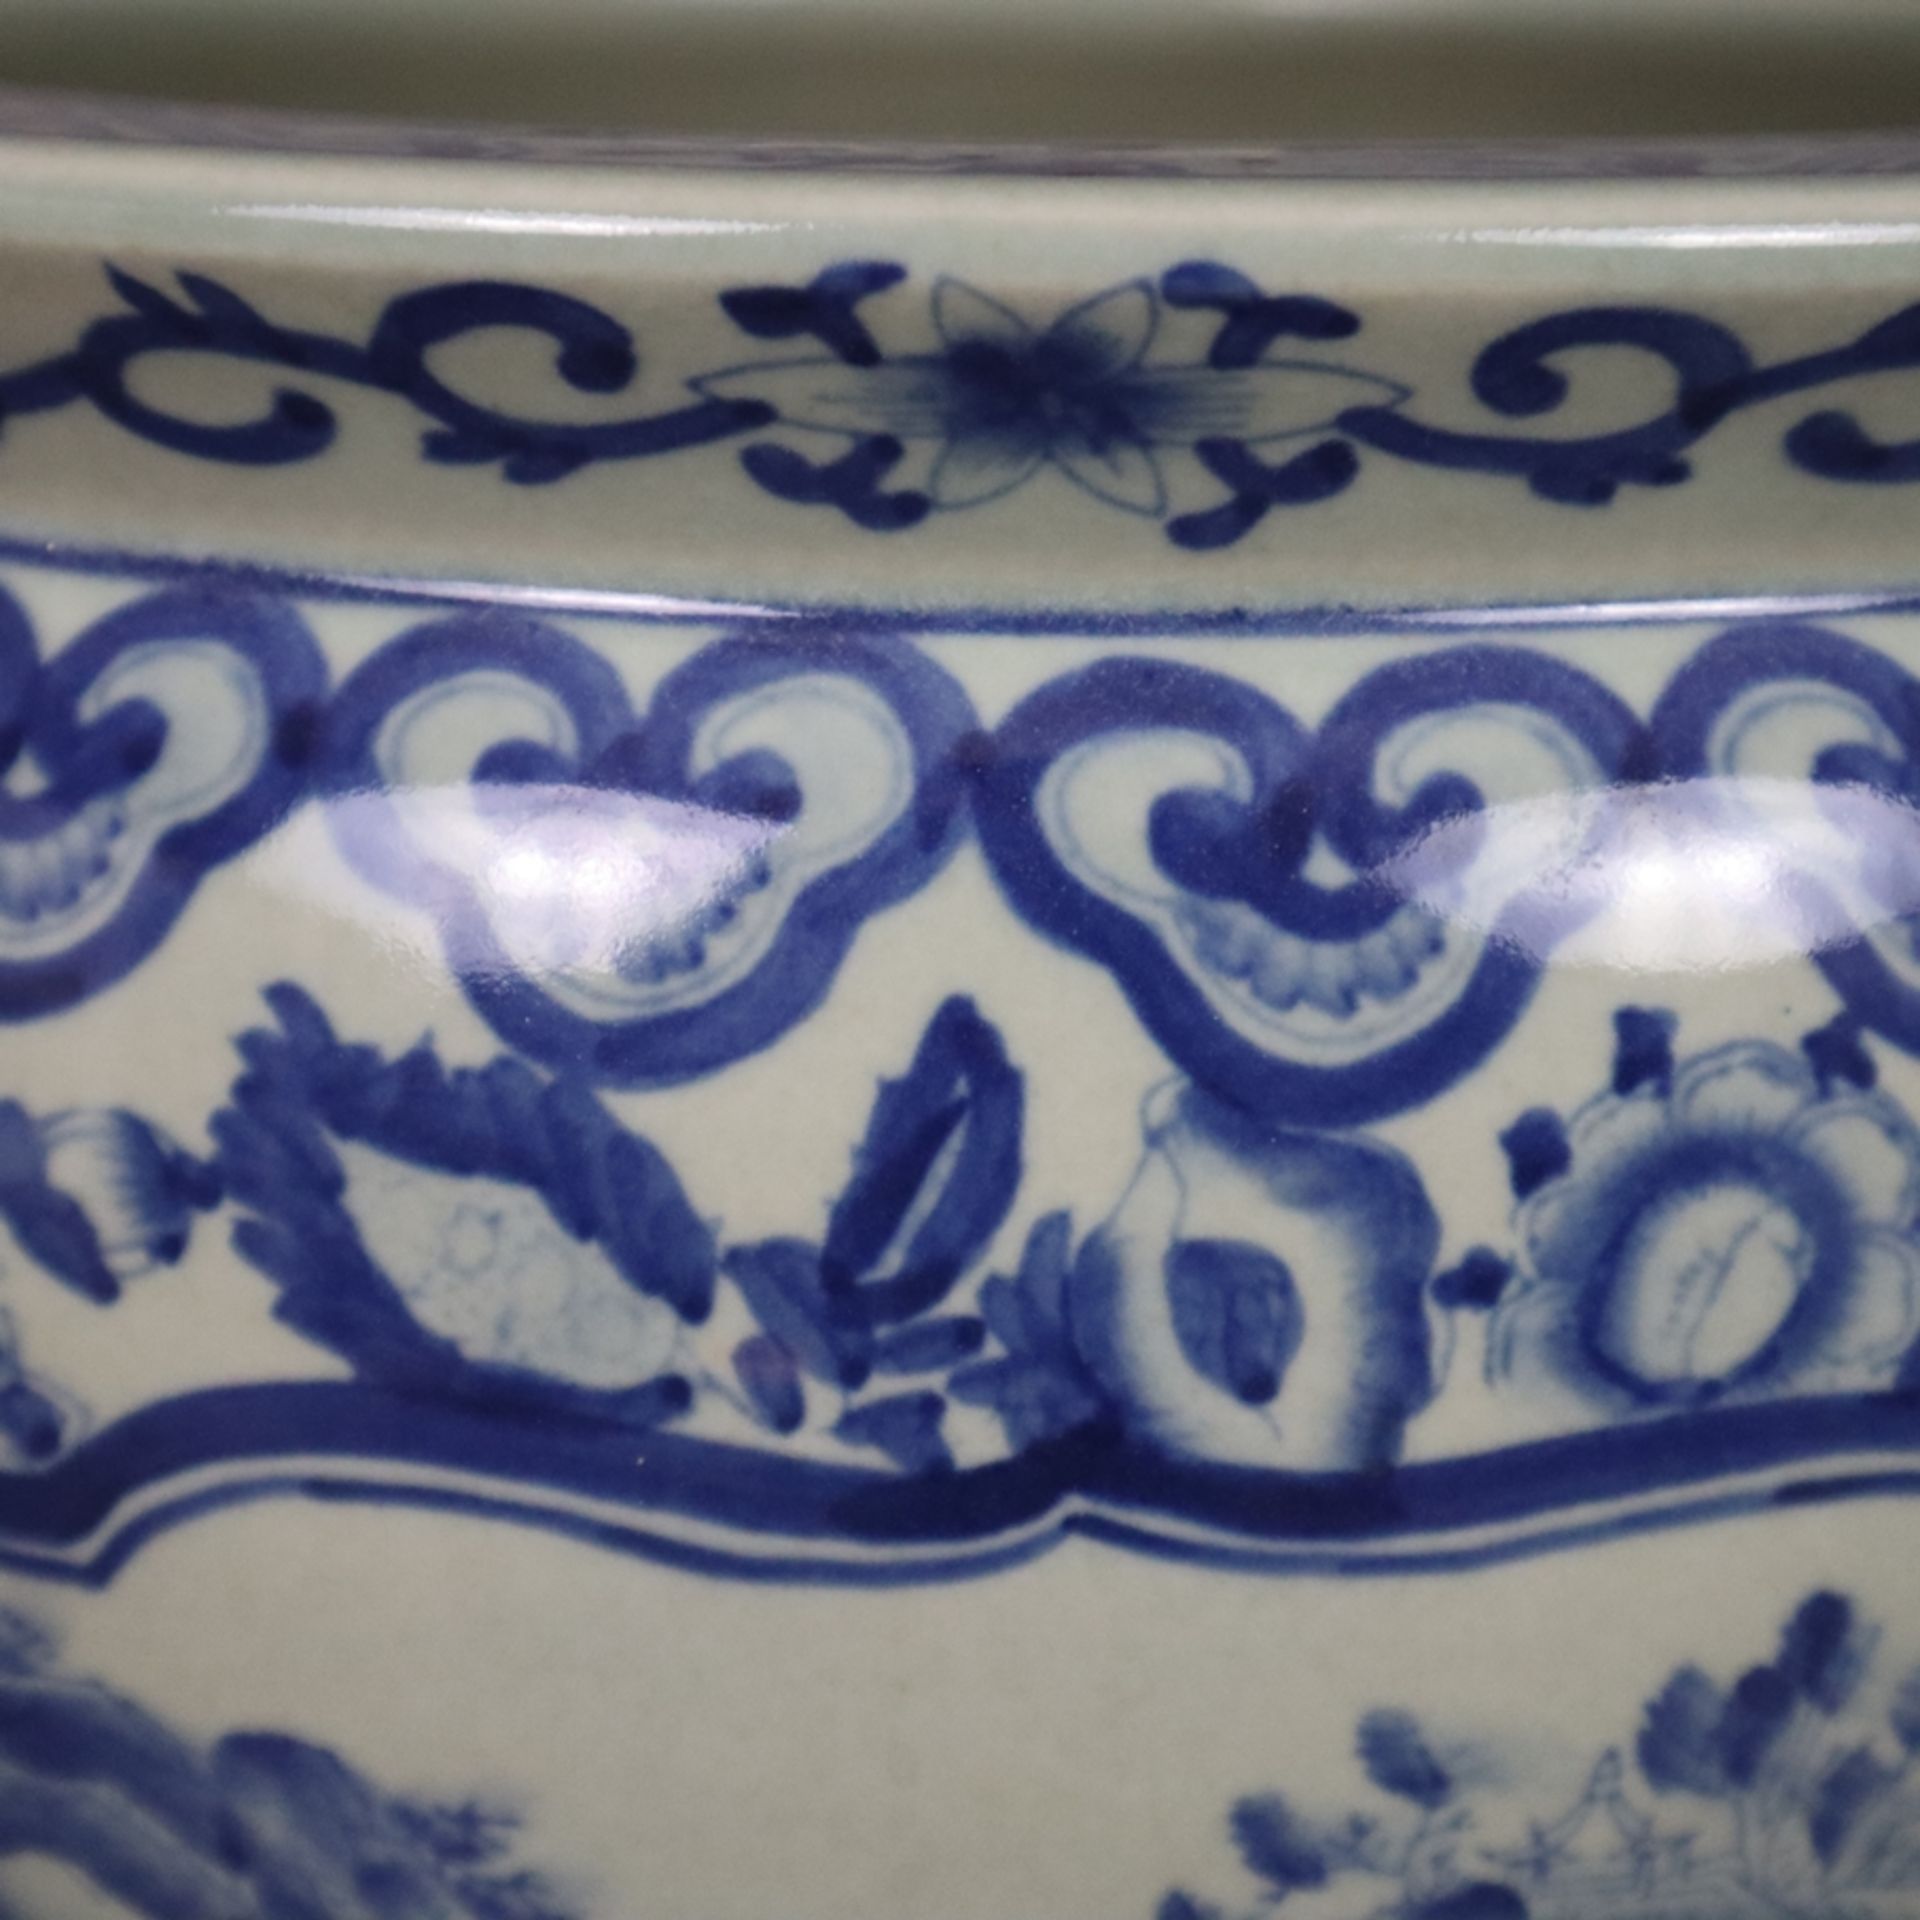 Blau-weißer Cachepot - China, 20. Jh., Porzellan, blau-weiß bemalt, bauchiger Korpus mit eingezogen - Bild 4 aus 9